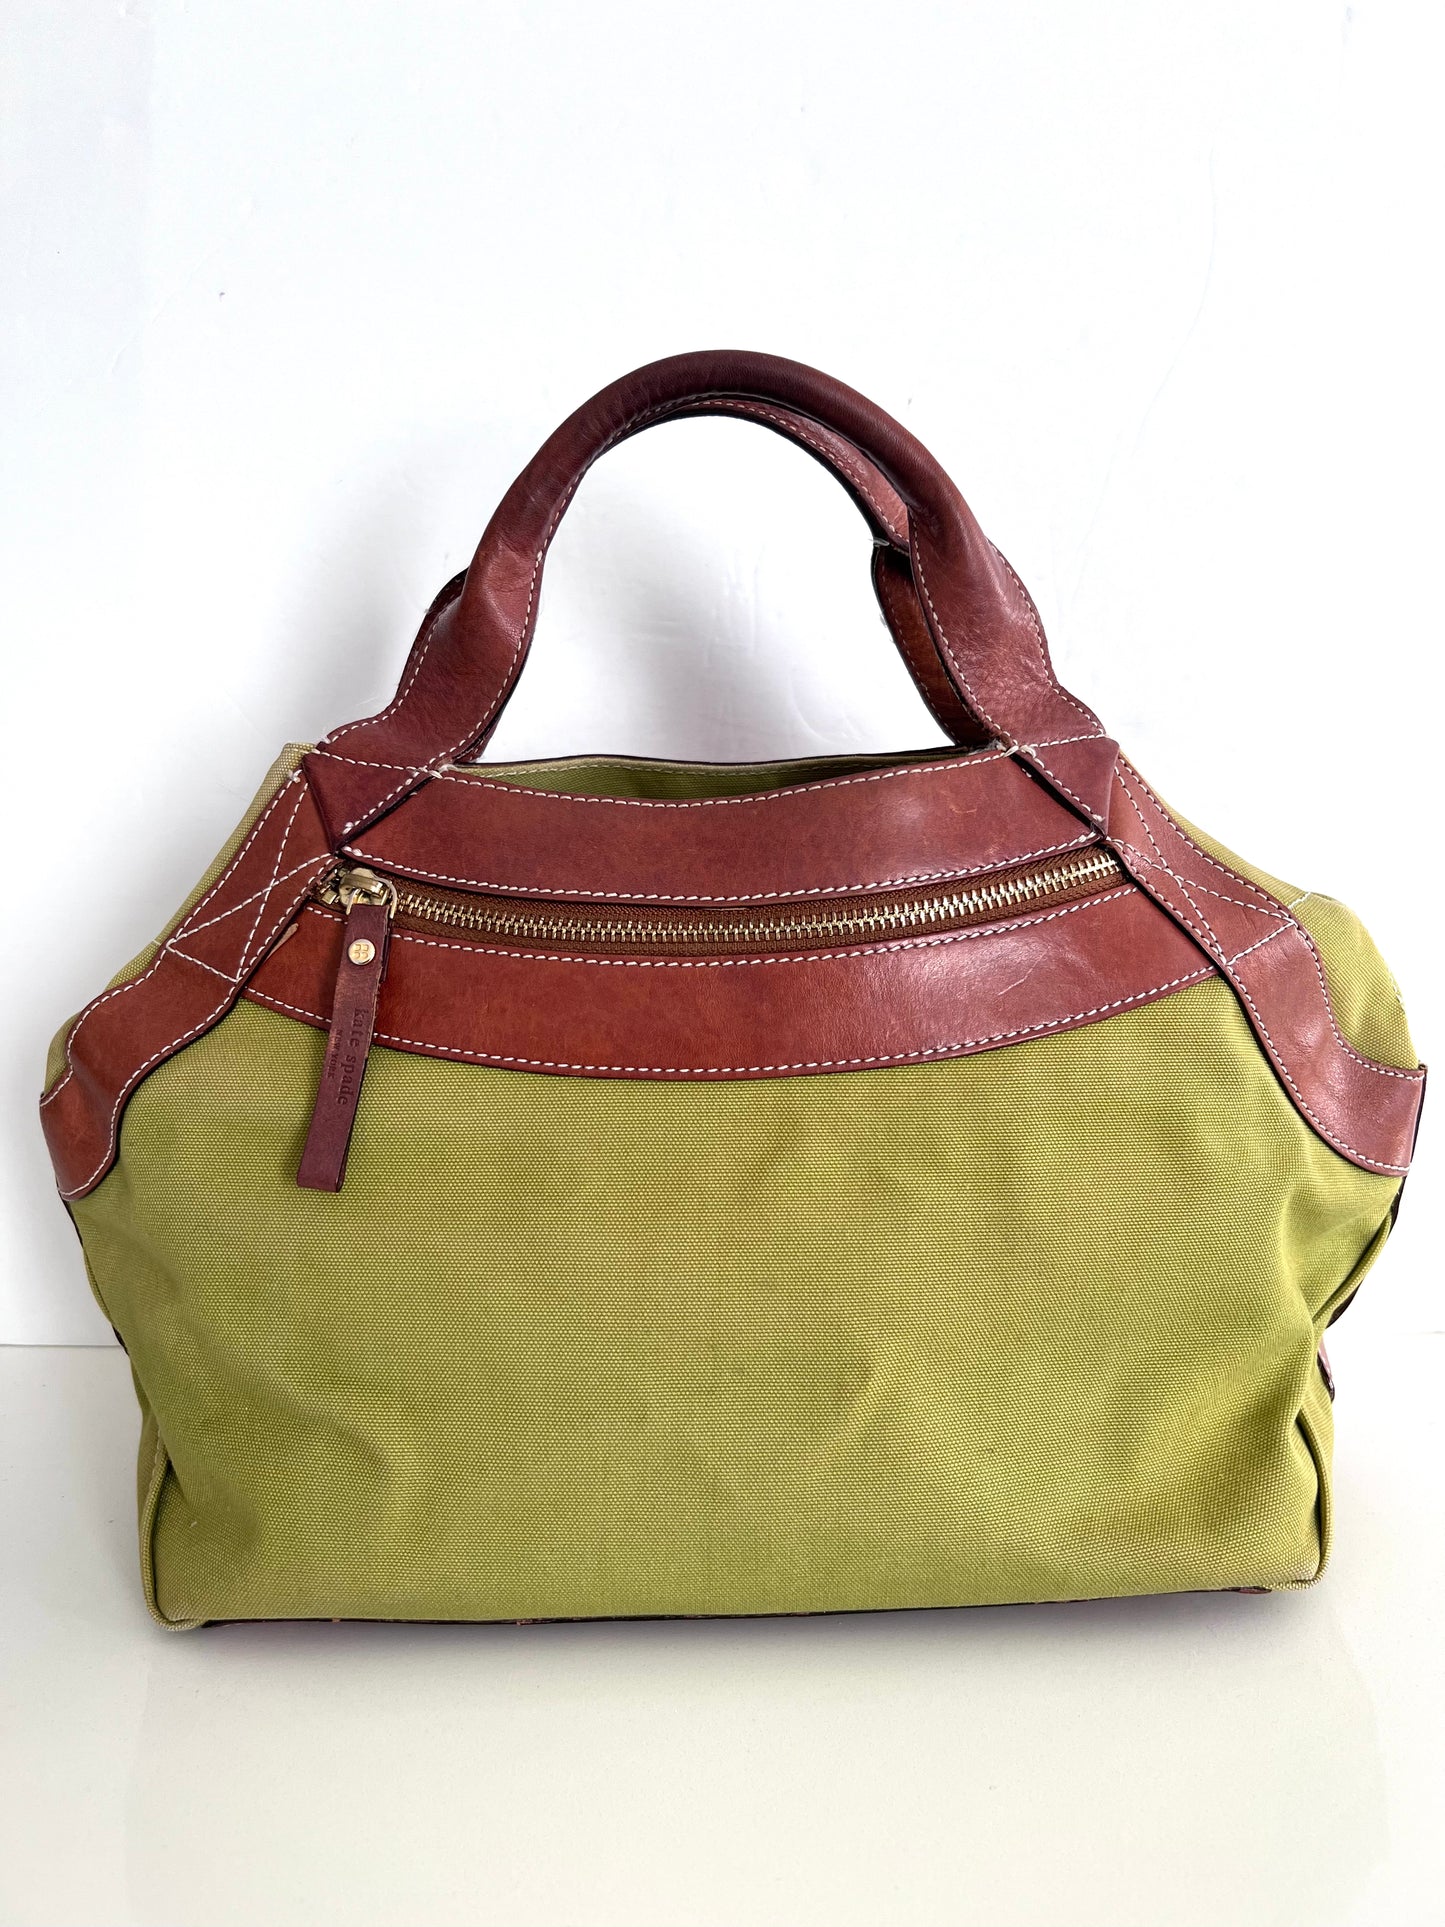 Kate Spade Green Canvas Handbag